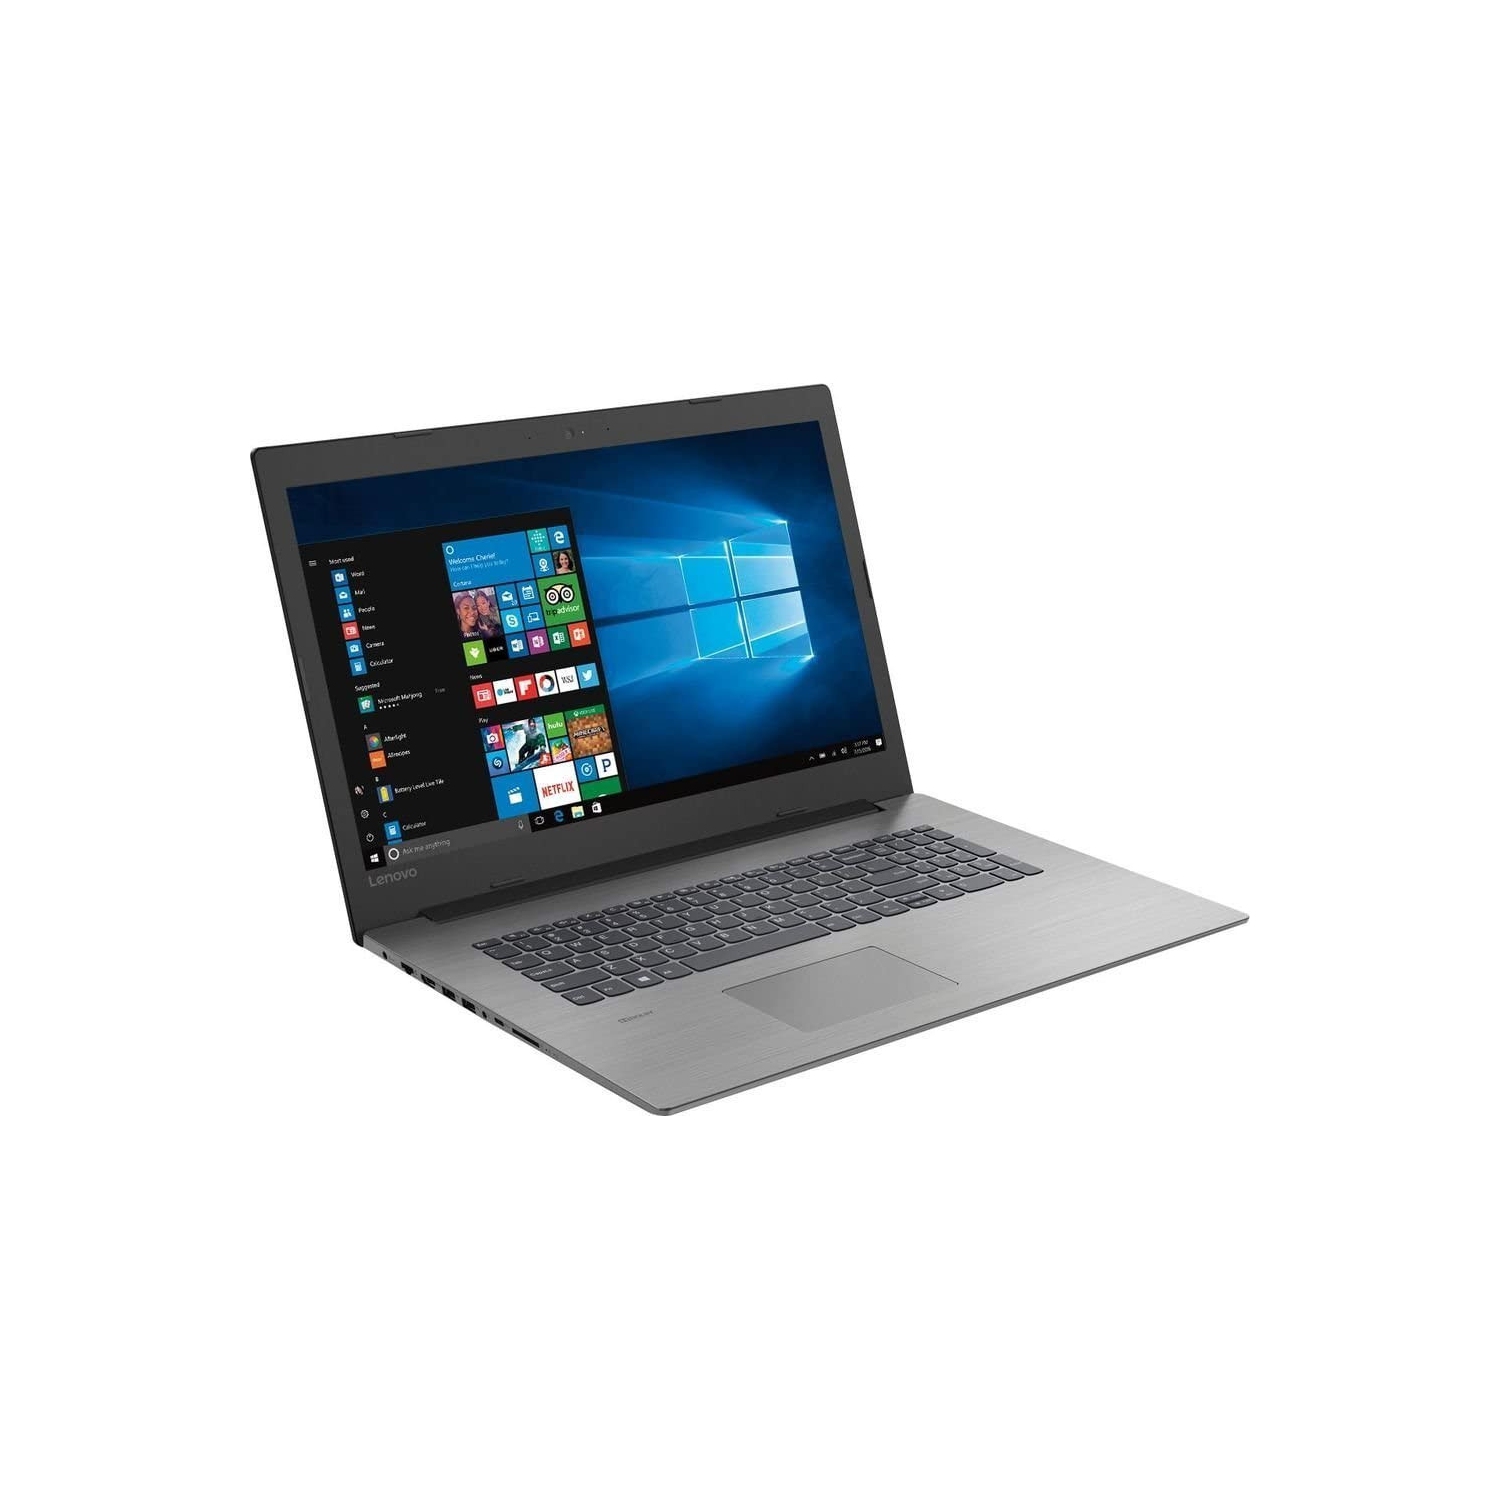 Lenovo Ideapad 330-17IKB, 17.3" HD+ 900p Laptop, Core i5 8th Gen, 8Gb RAM, 512Gb SSD, Windows 10 (Refurbished Fair)